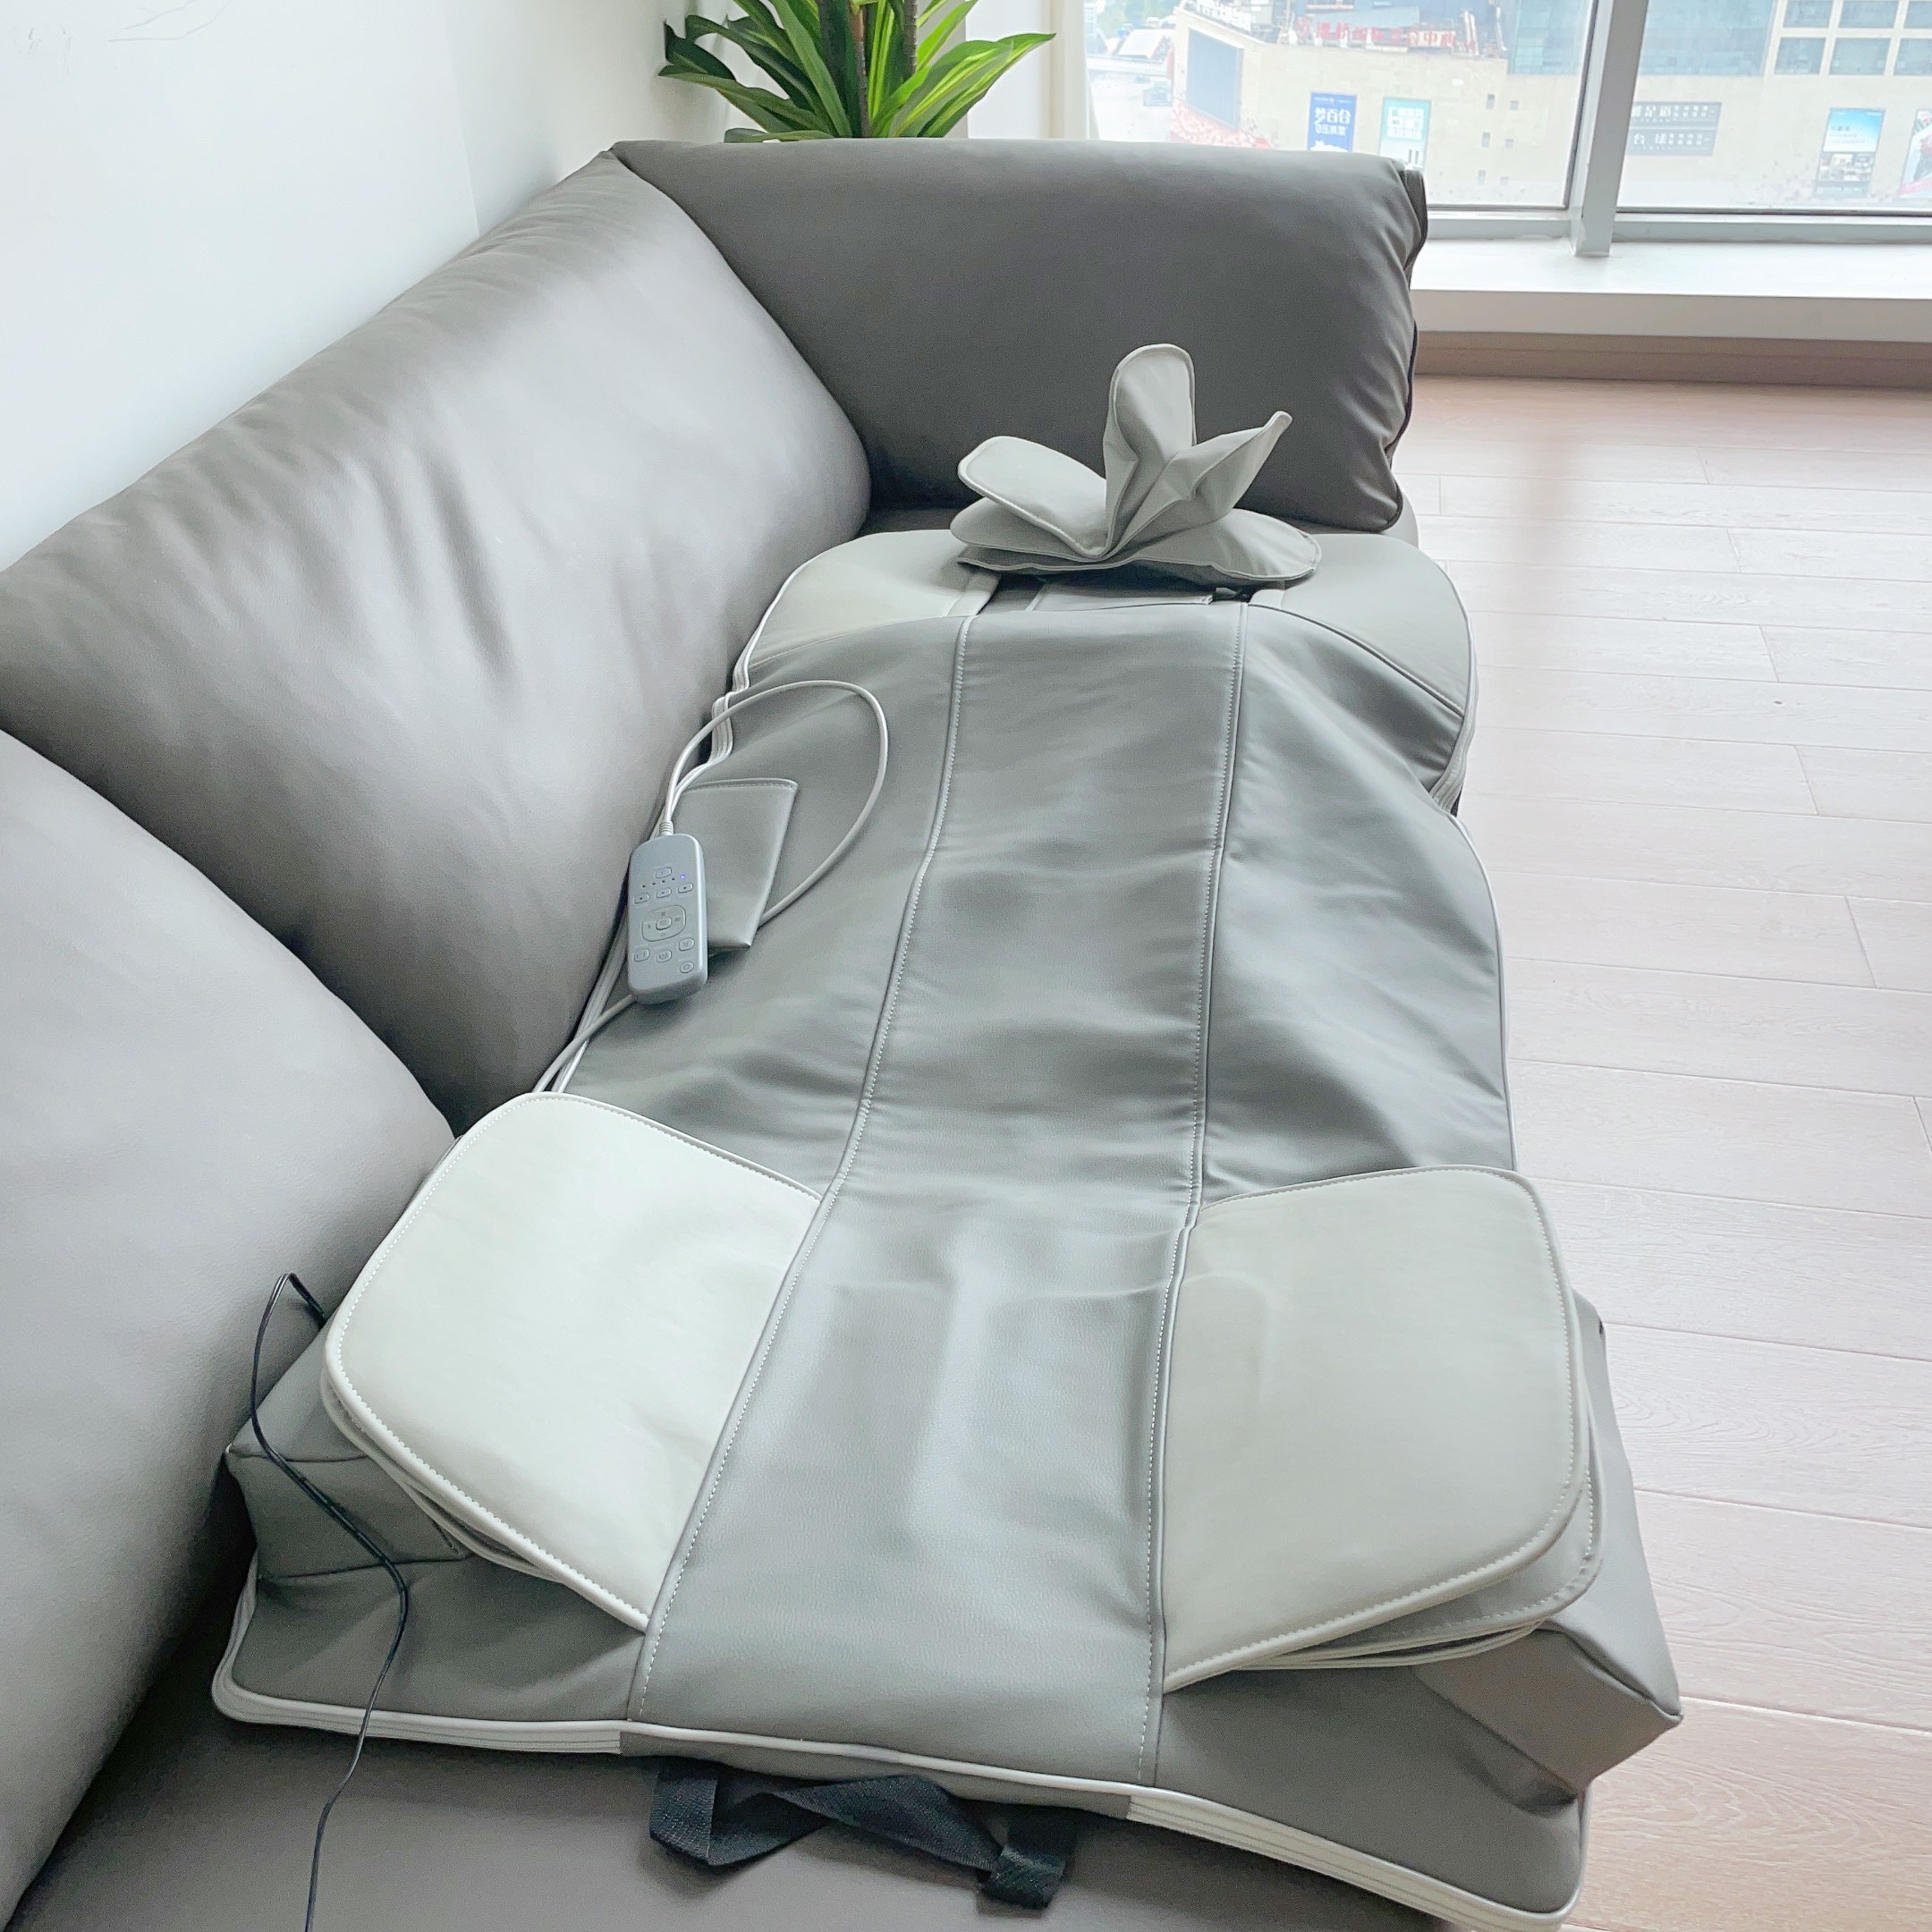 ZMIND C014 full-body airbag automatic massage mattress heat fold massage mattress kneading massage mattress